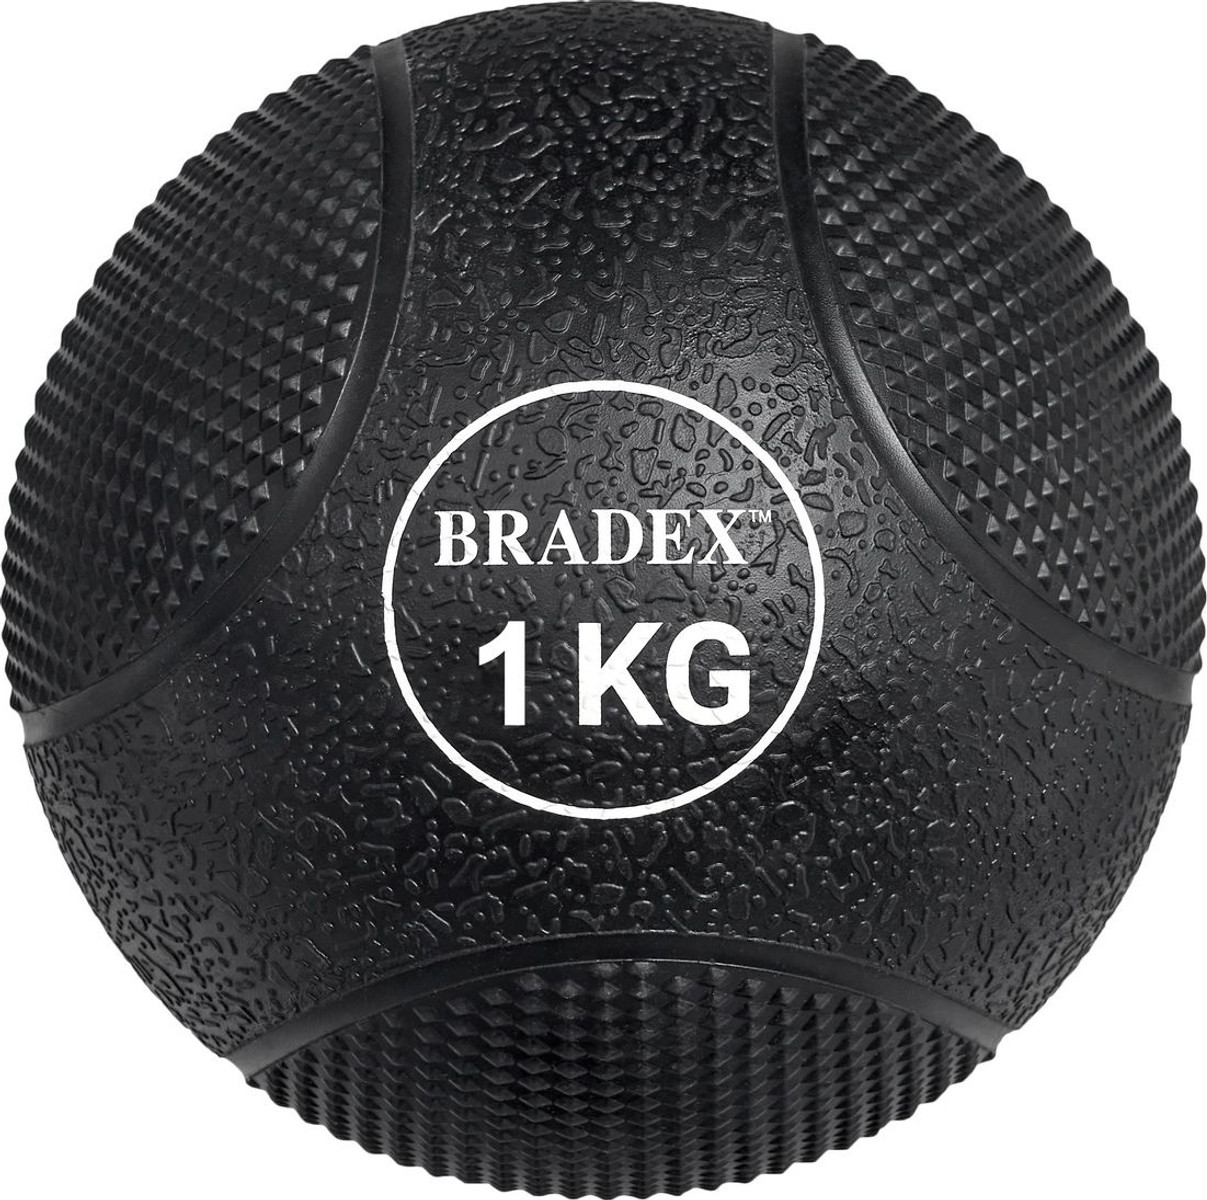 Мяч Bradex SF 0770 (1 кг)